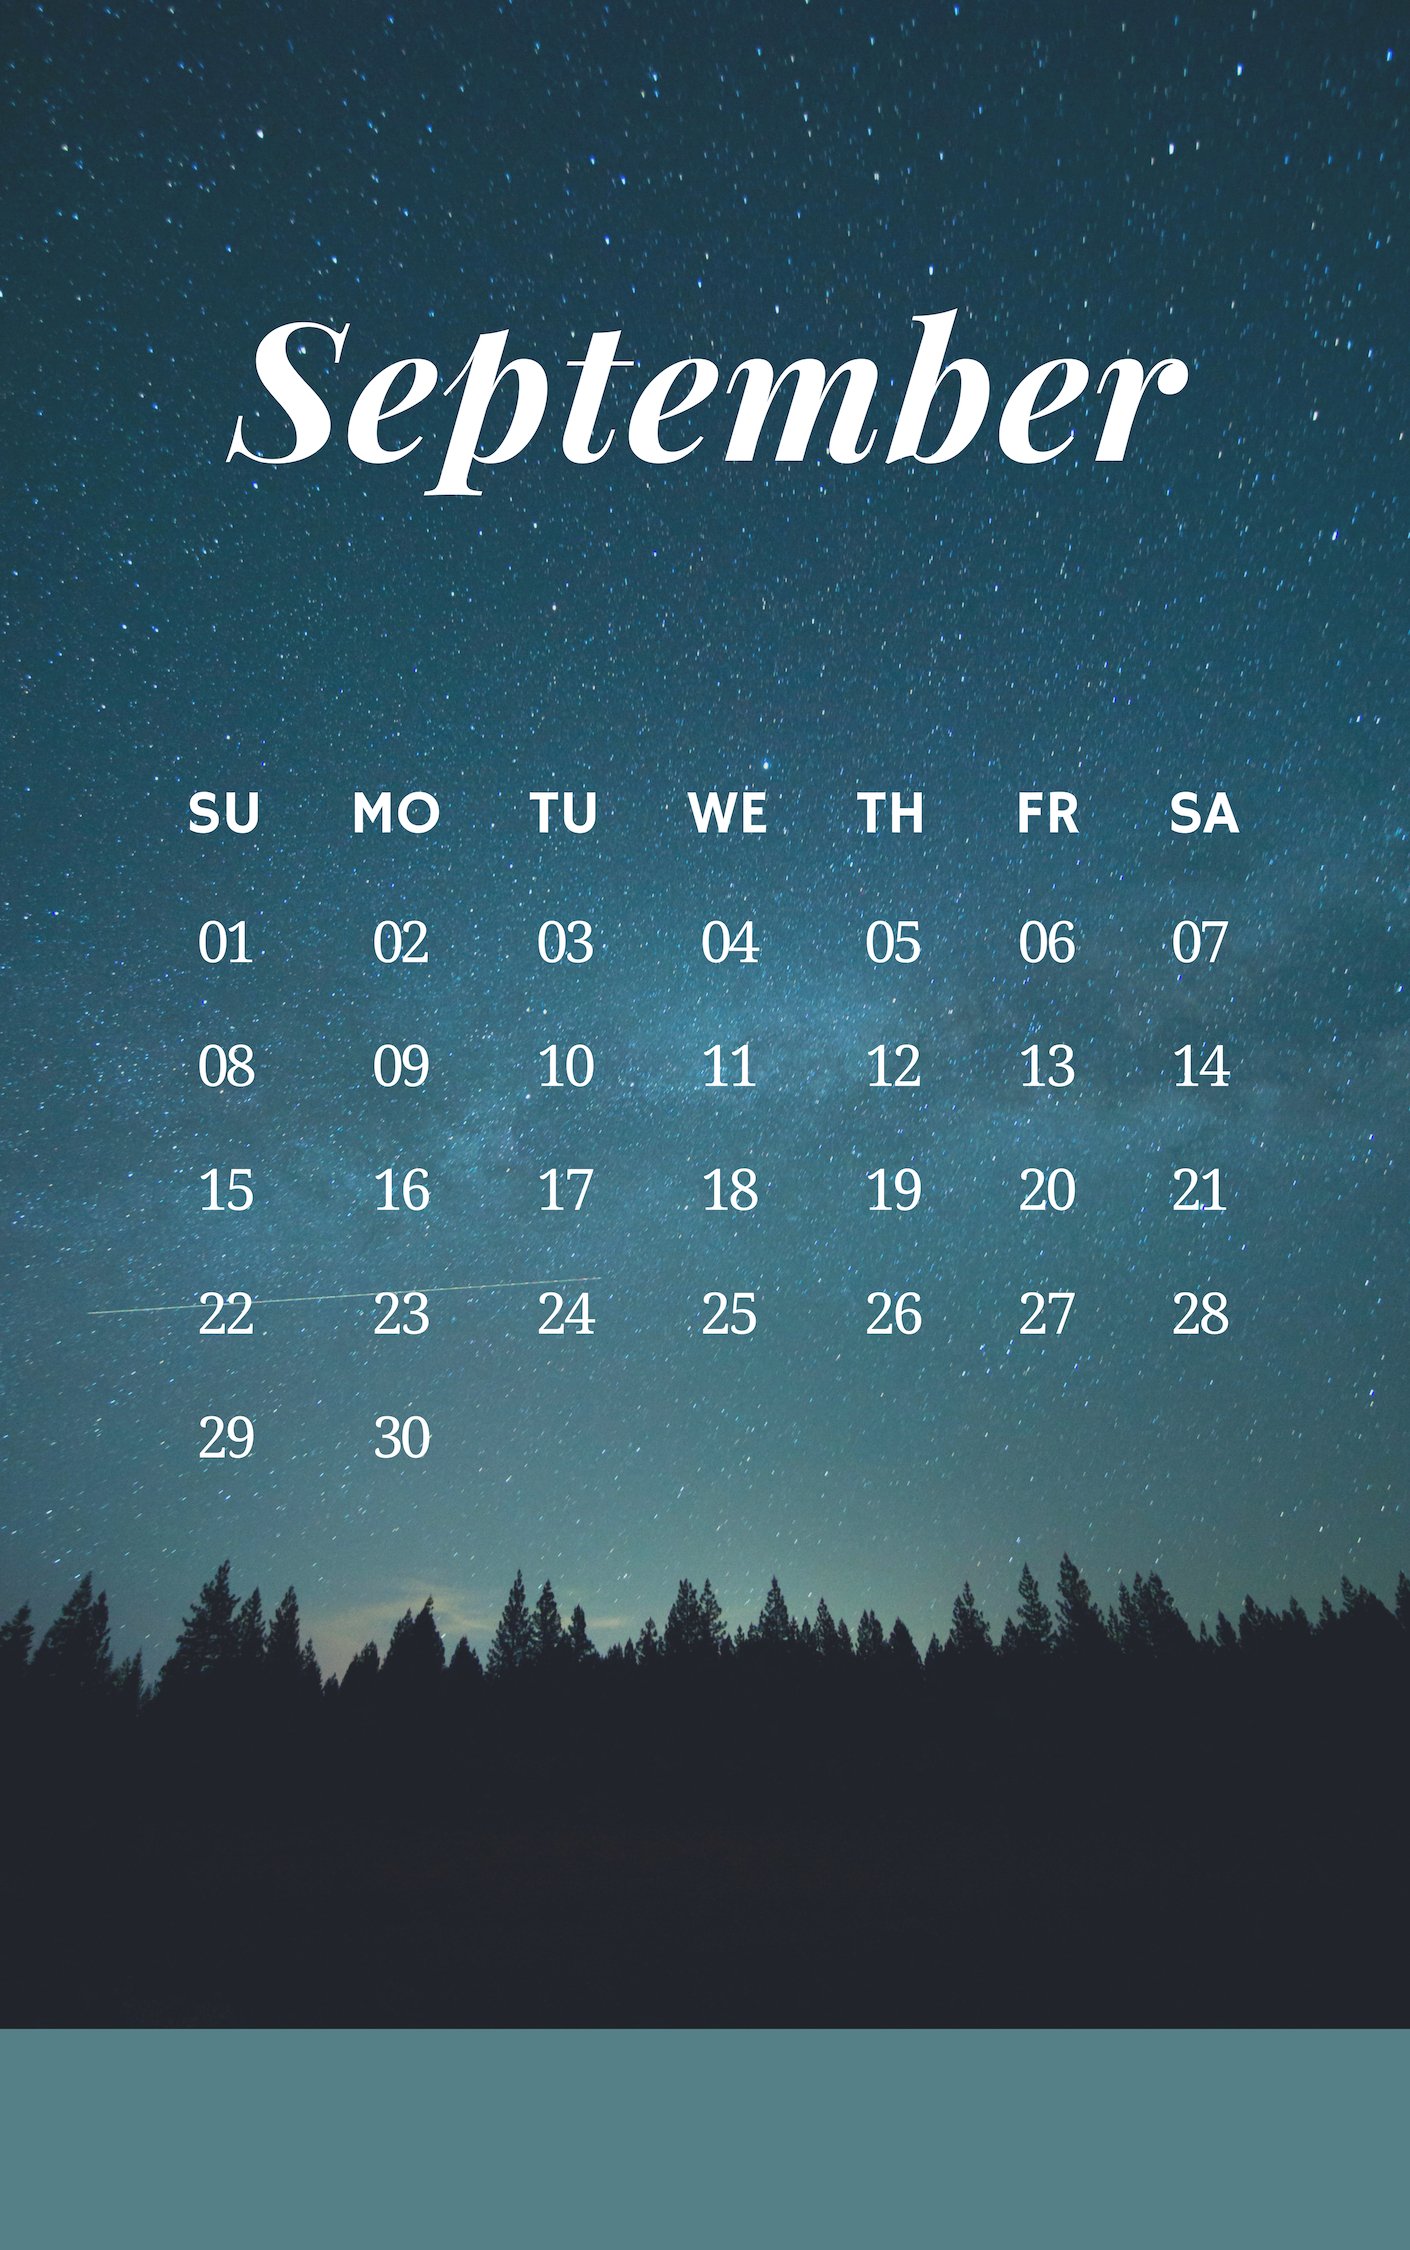 September 2019 Iphone Calenda - September 2019 Calendar Nature - HD Wallpaper 